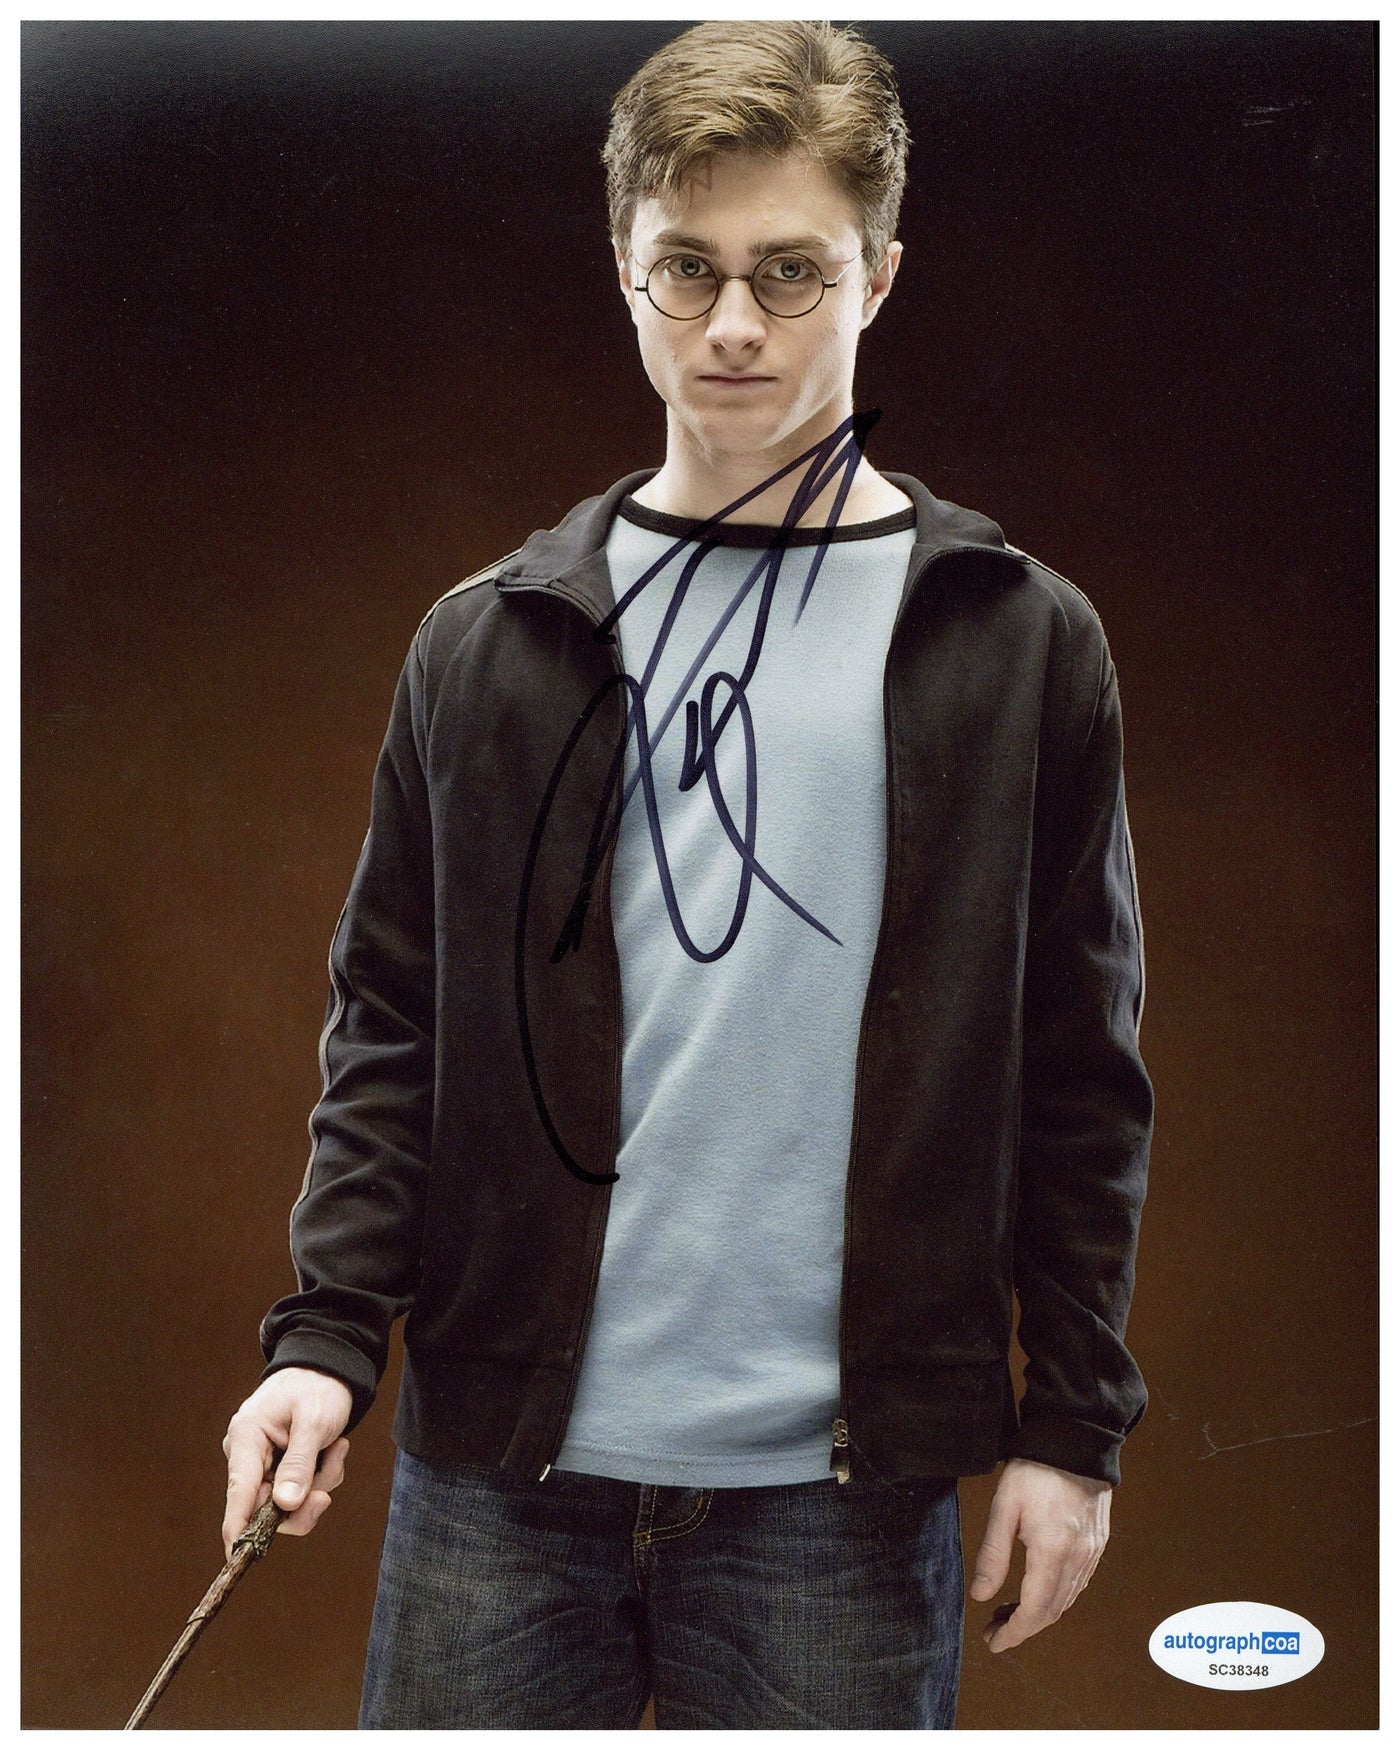 Daniel Radcliffe Signed 8x10 Photo Harry Potter Authentic Autographed JSA COA #3